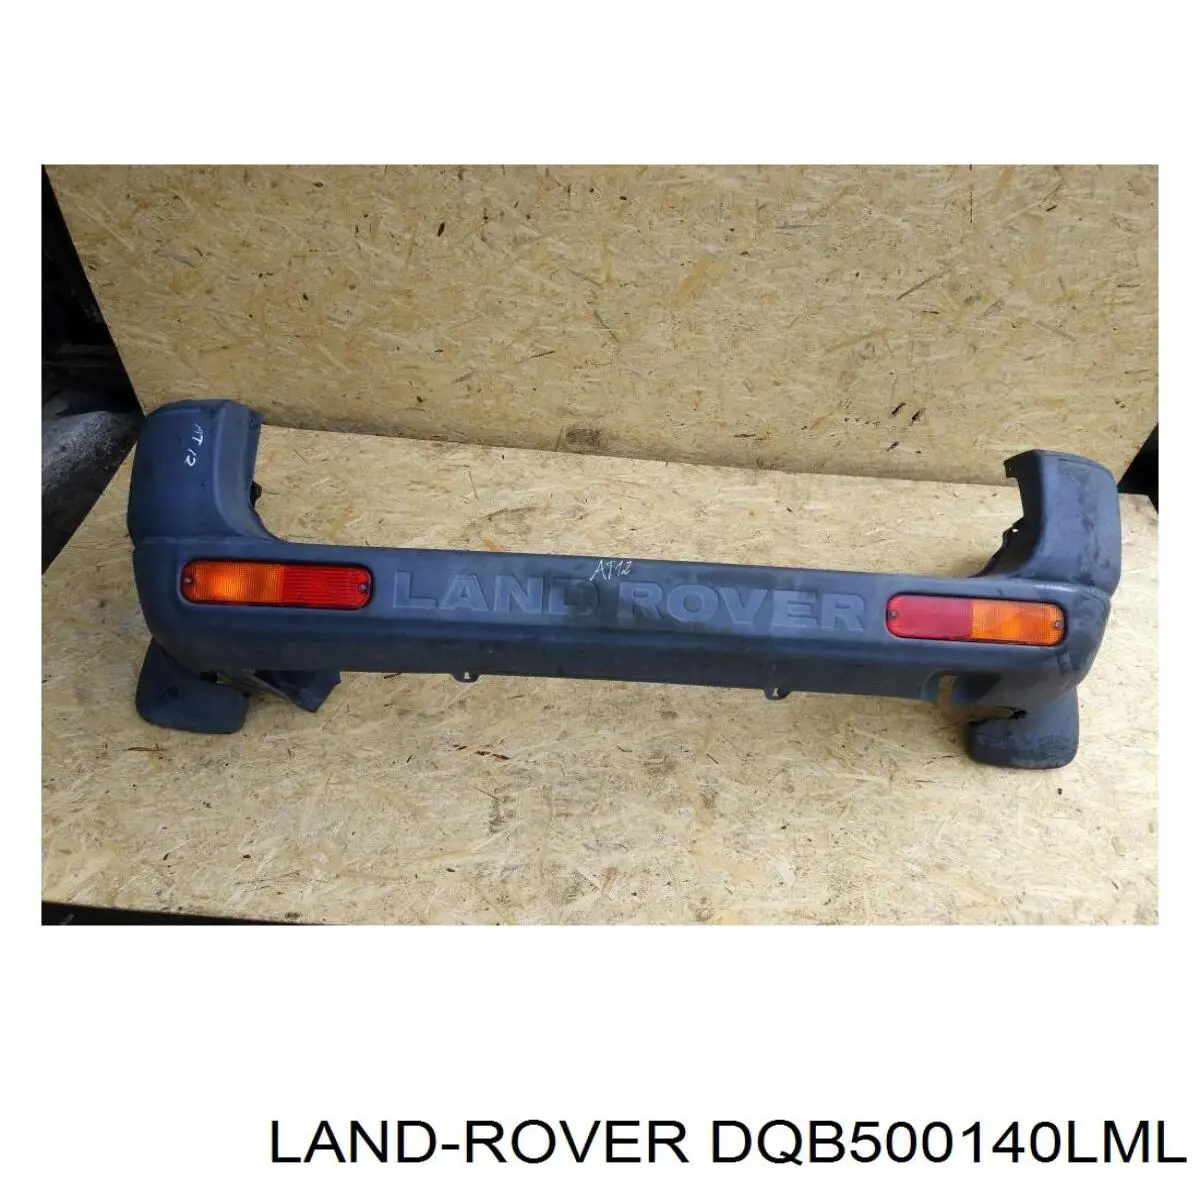 DQB500191LML Land Rover parachoques trasero